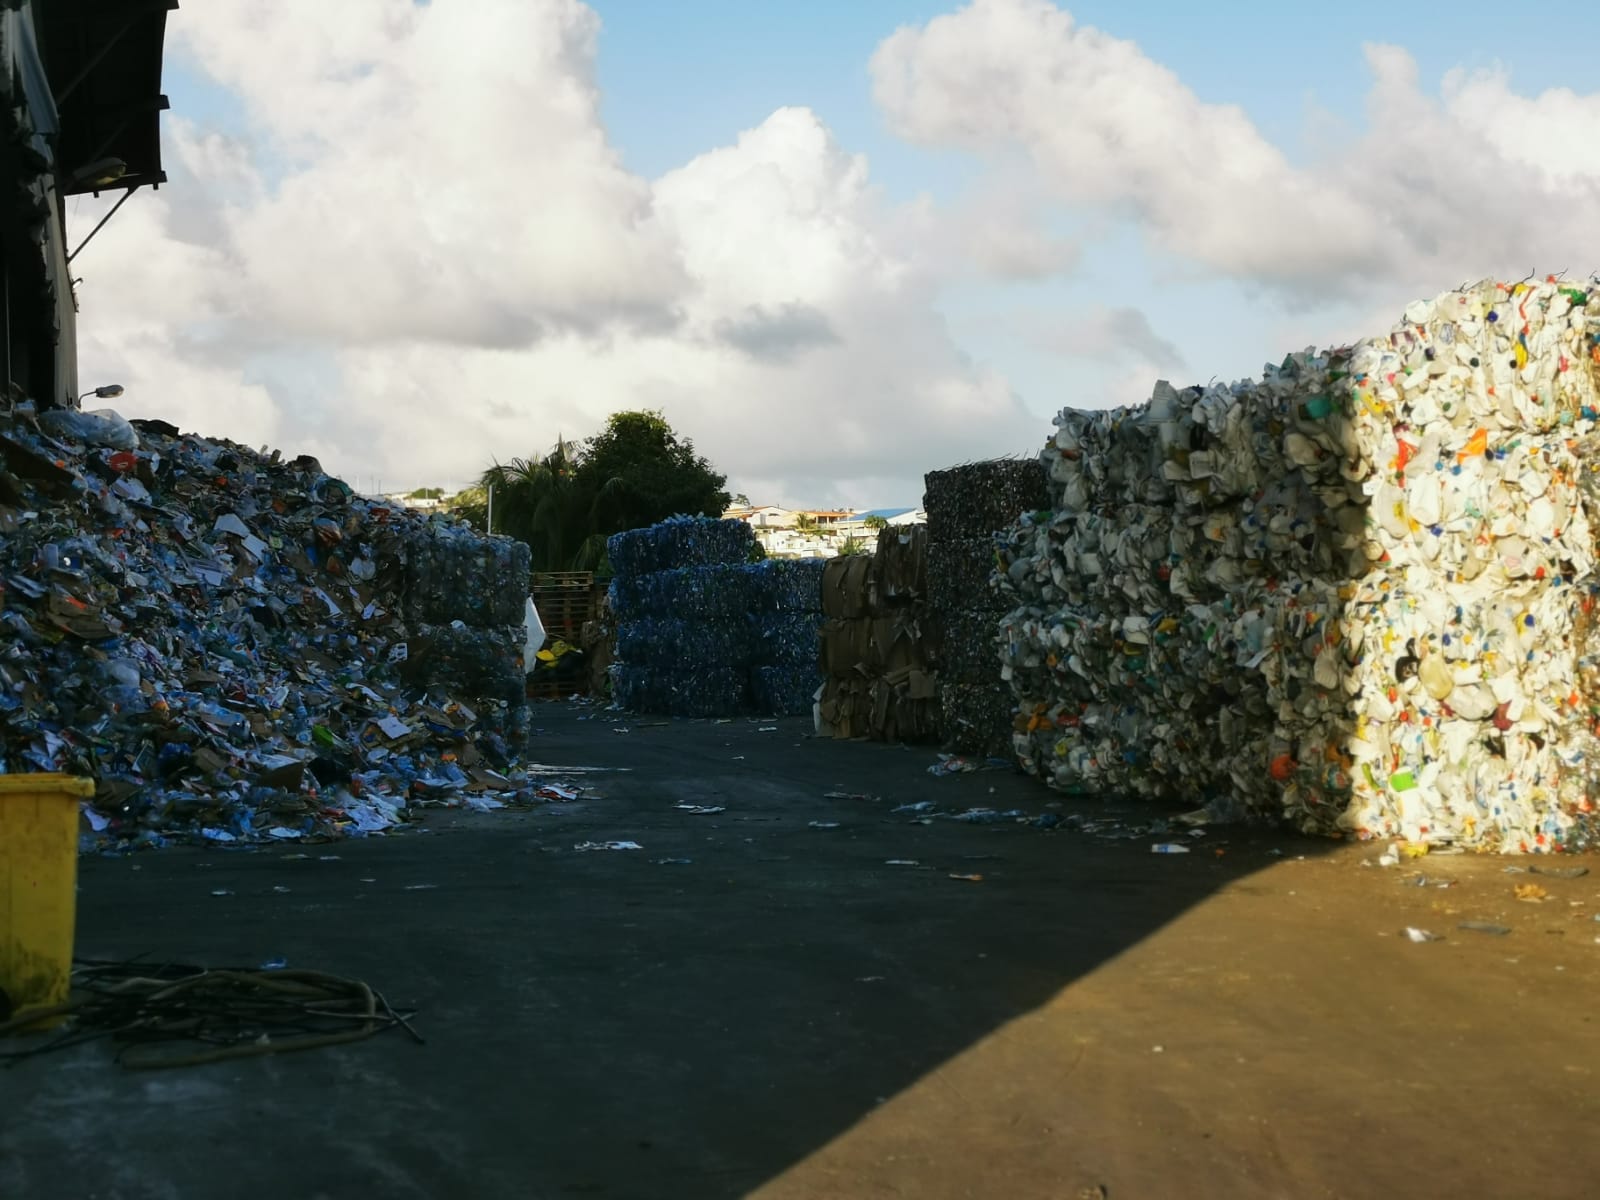     Martinique Recyclage saturée, la collecte des poubelles suspendue 

